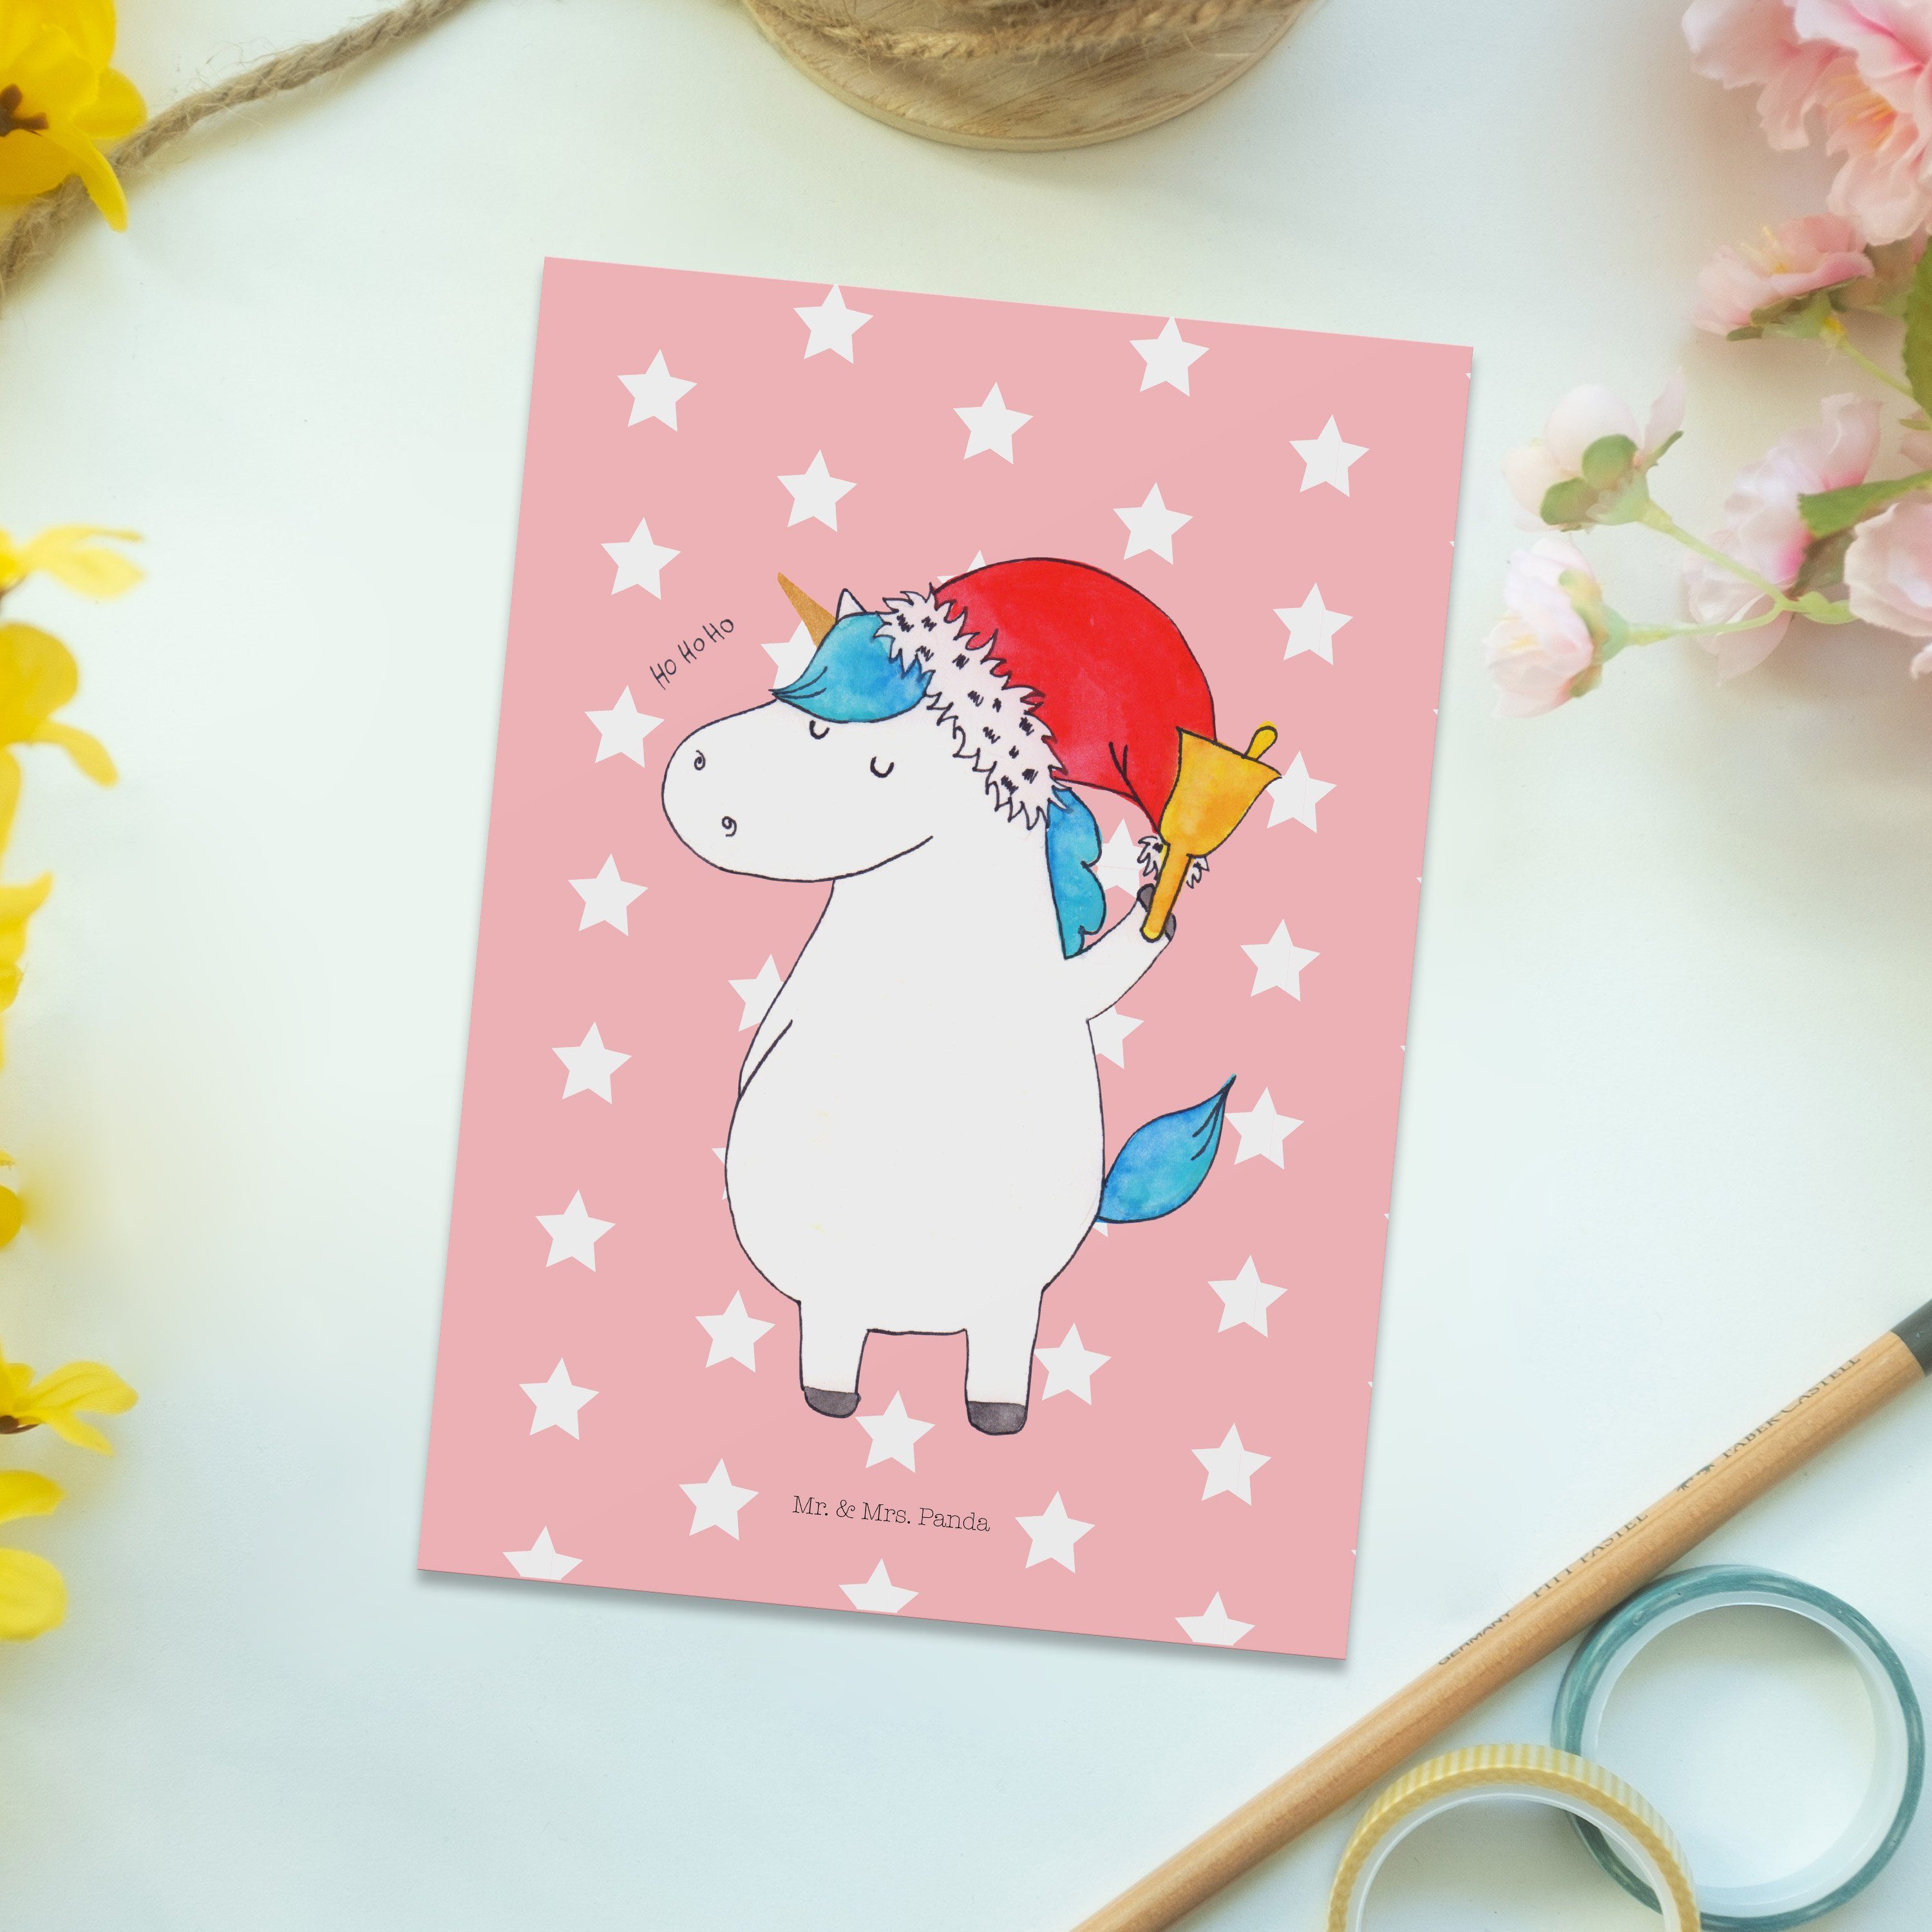 Mr. & Mrs. Panda Postkarte Einhorn Weihnachtsmann - Rot Pastell - Geschenk, Geburtstagskarte, We